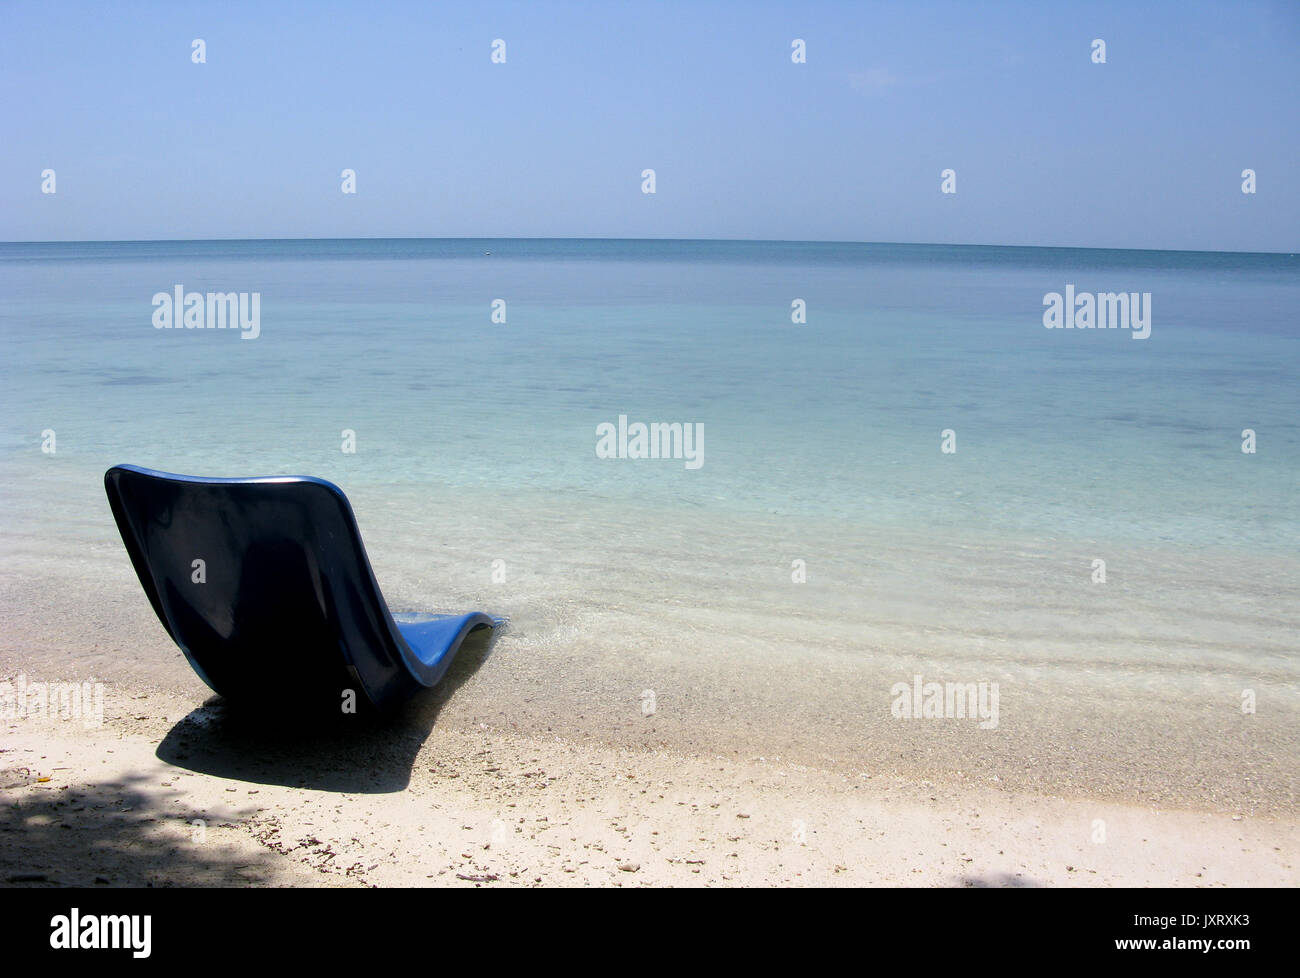 Chair blue on a nice beach Stock Photo